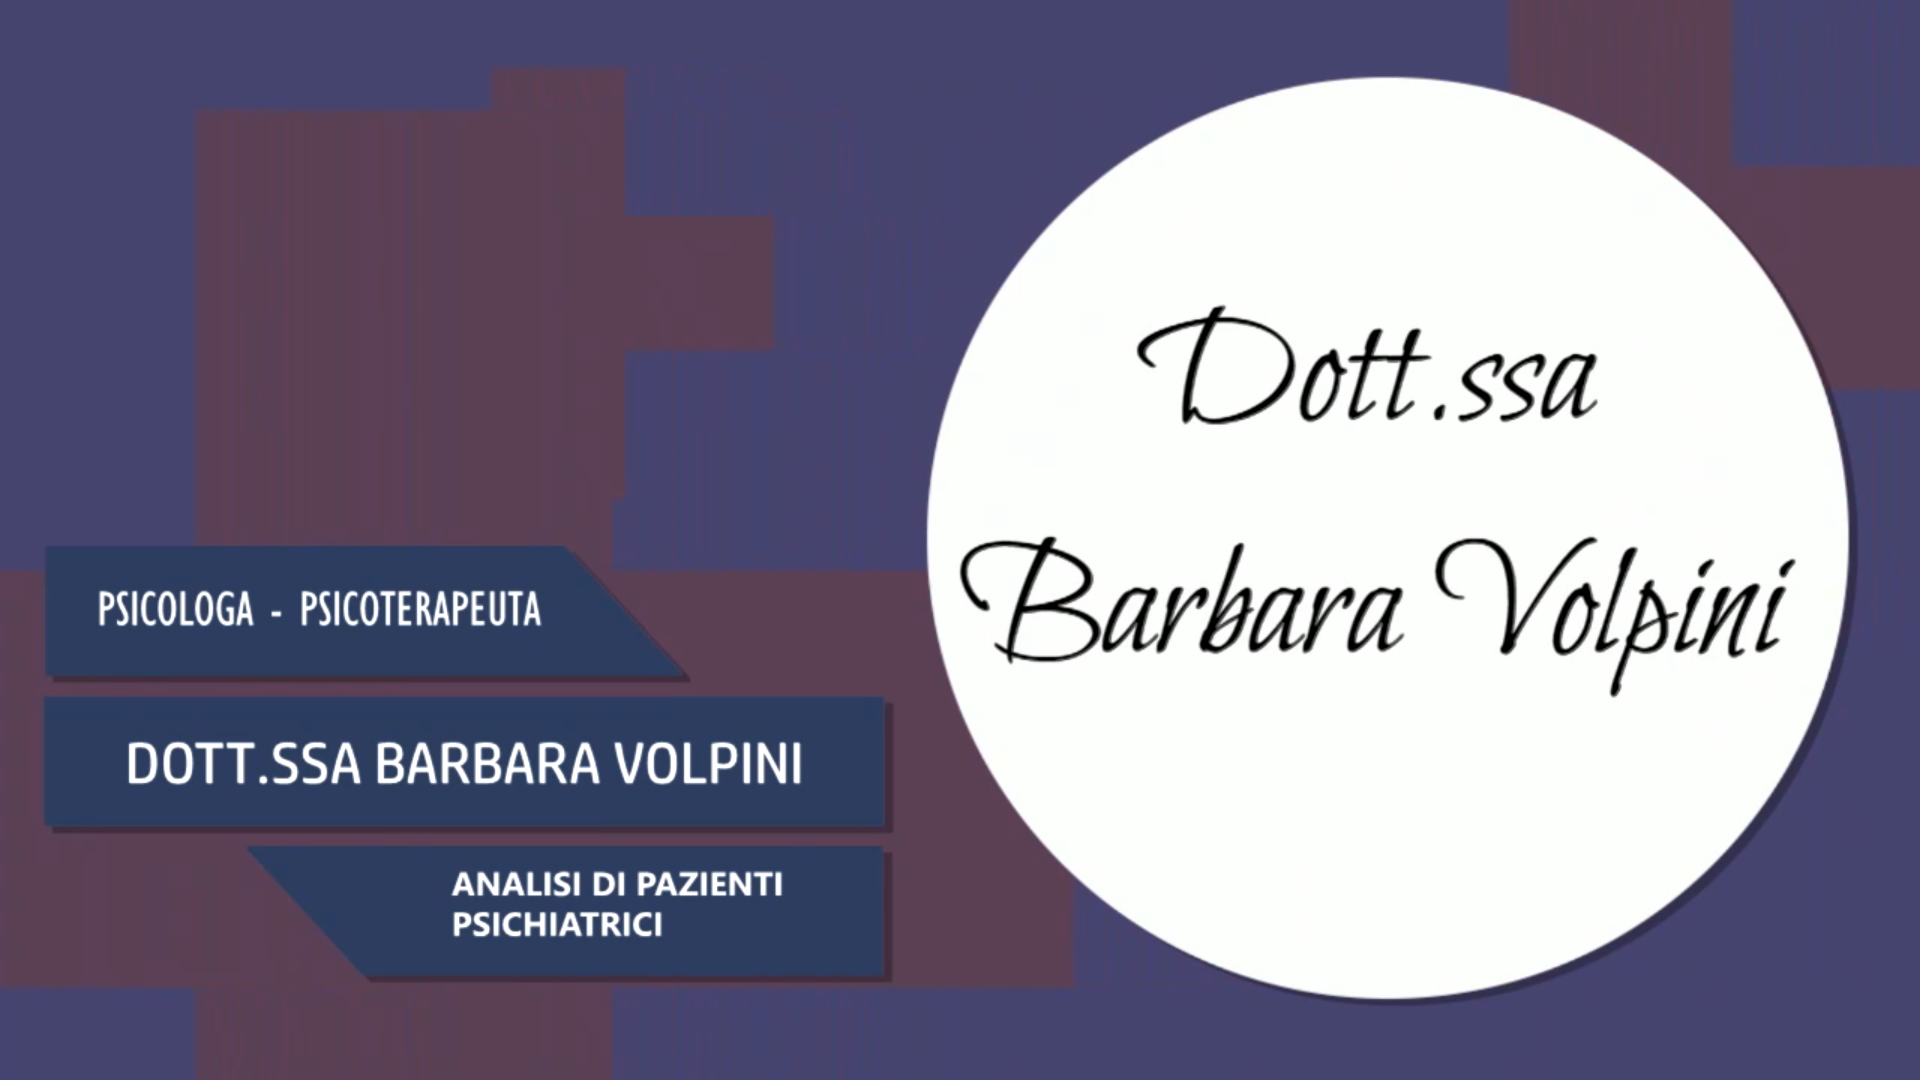 Intervista alla Dott.ssa Barbara Volpini – Analisi di pazienti psichiatrici